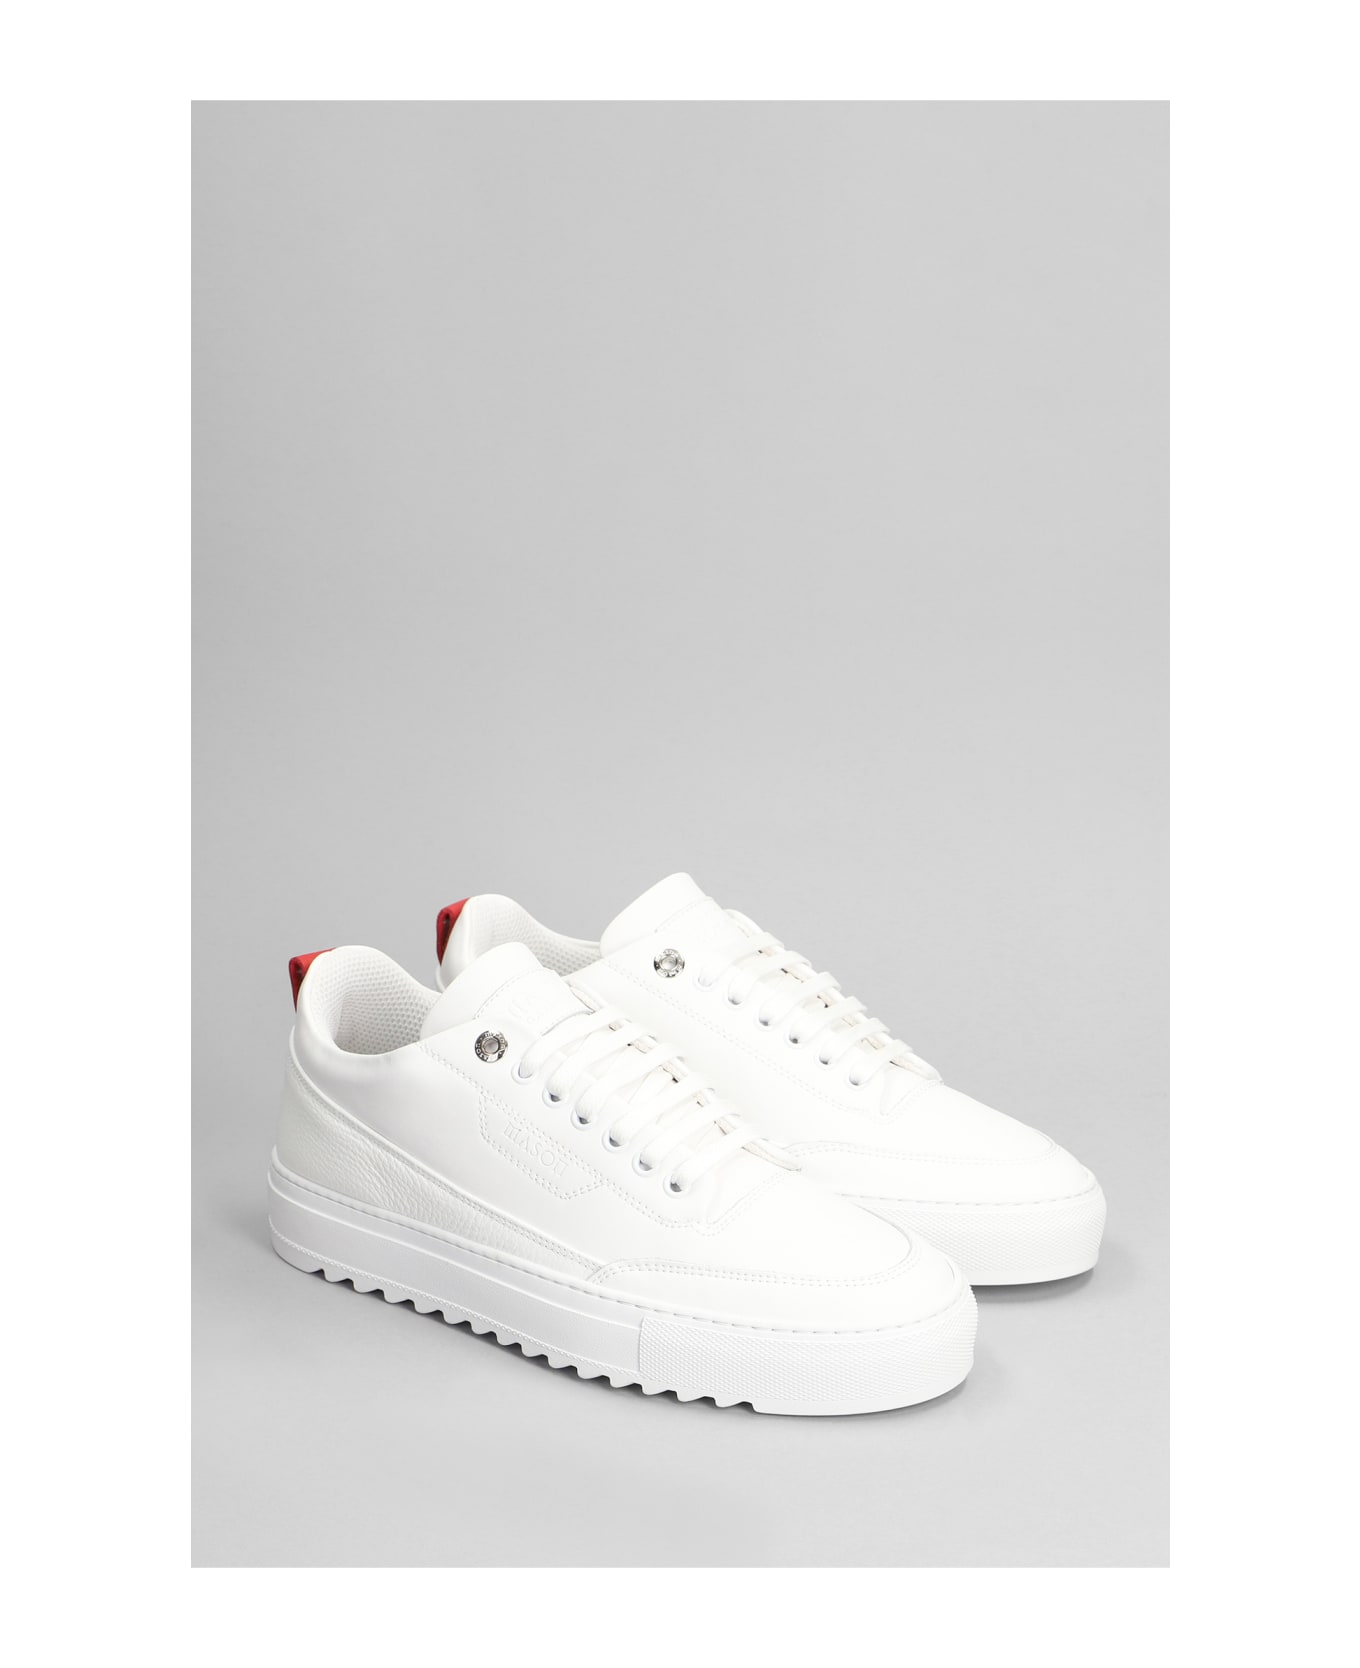 Mason Garments Torino Sneakers In White Leather - white